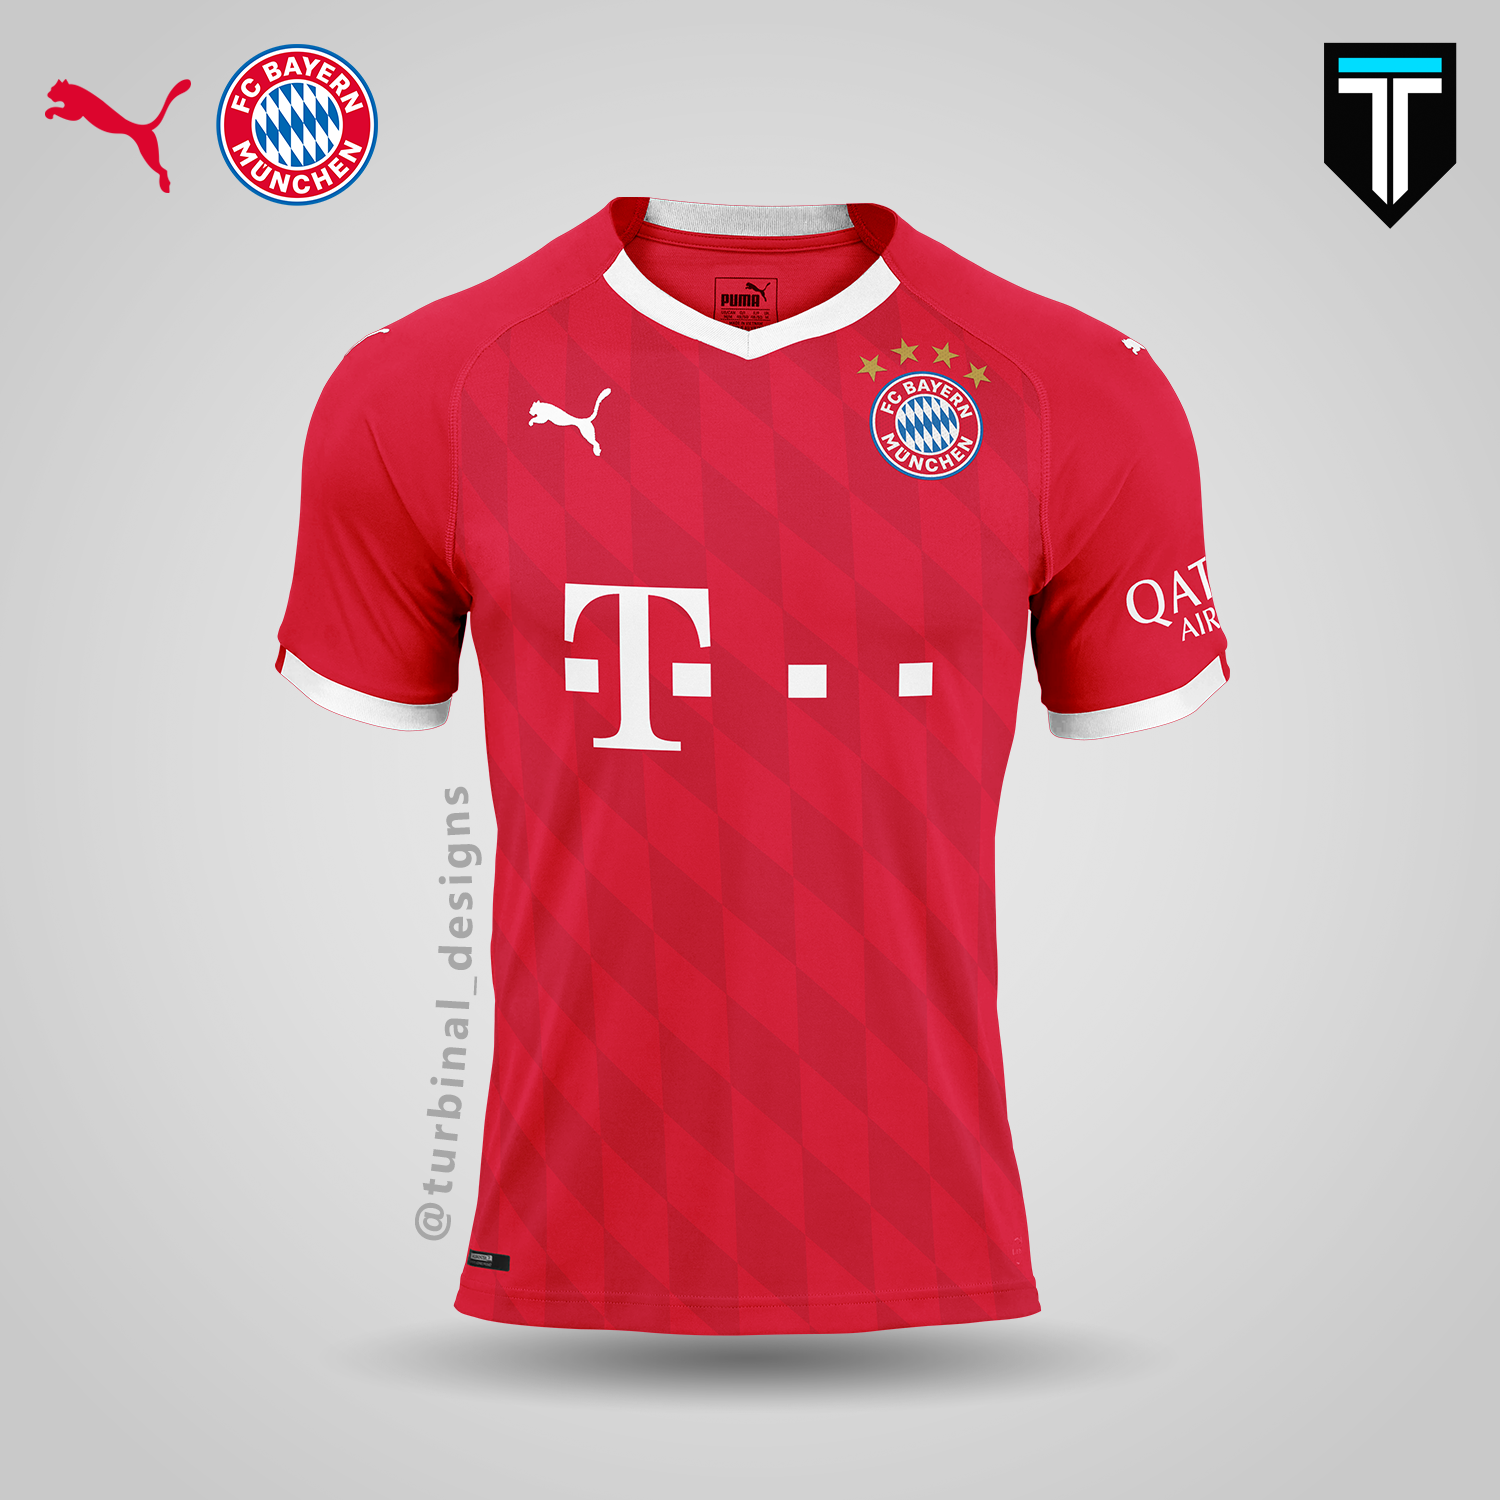 FC Bayern München x Puma - Home Kit